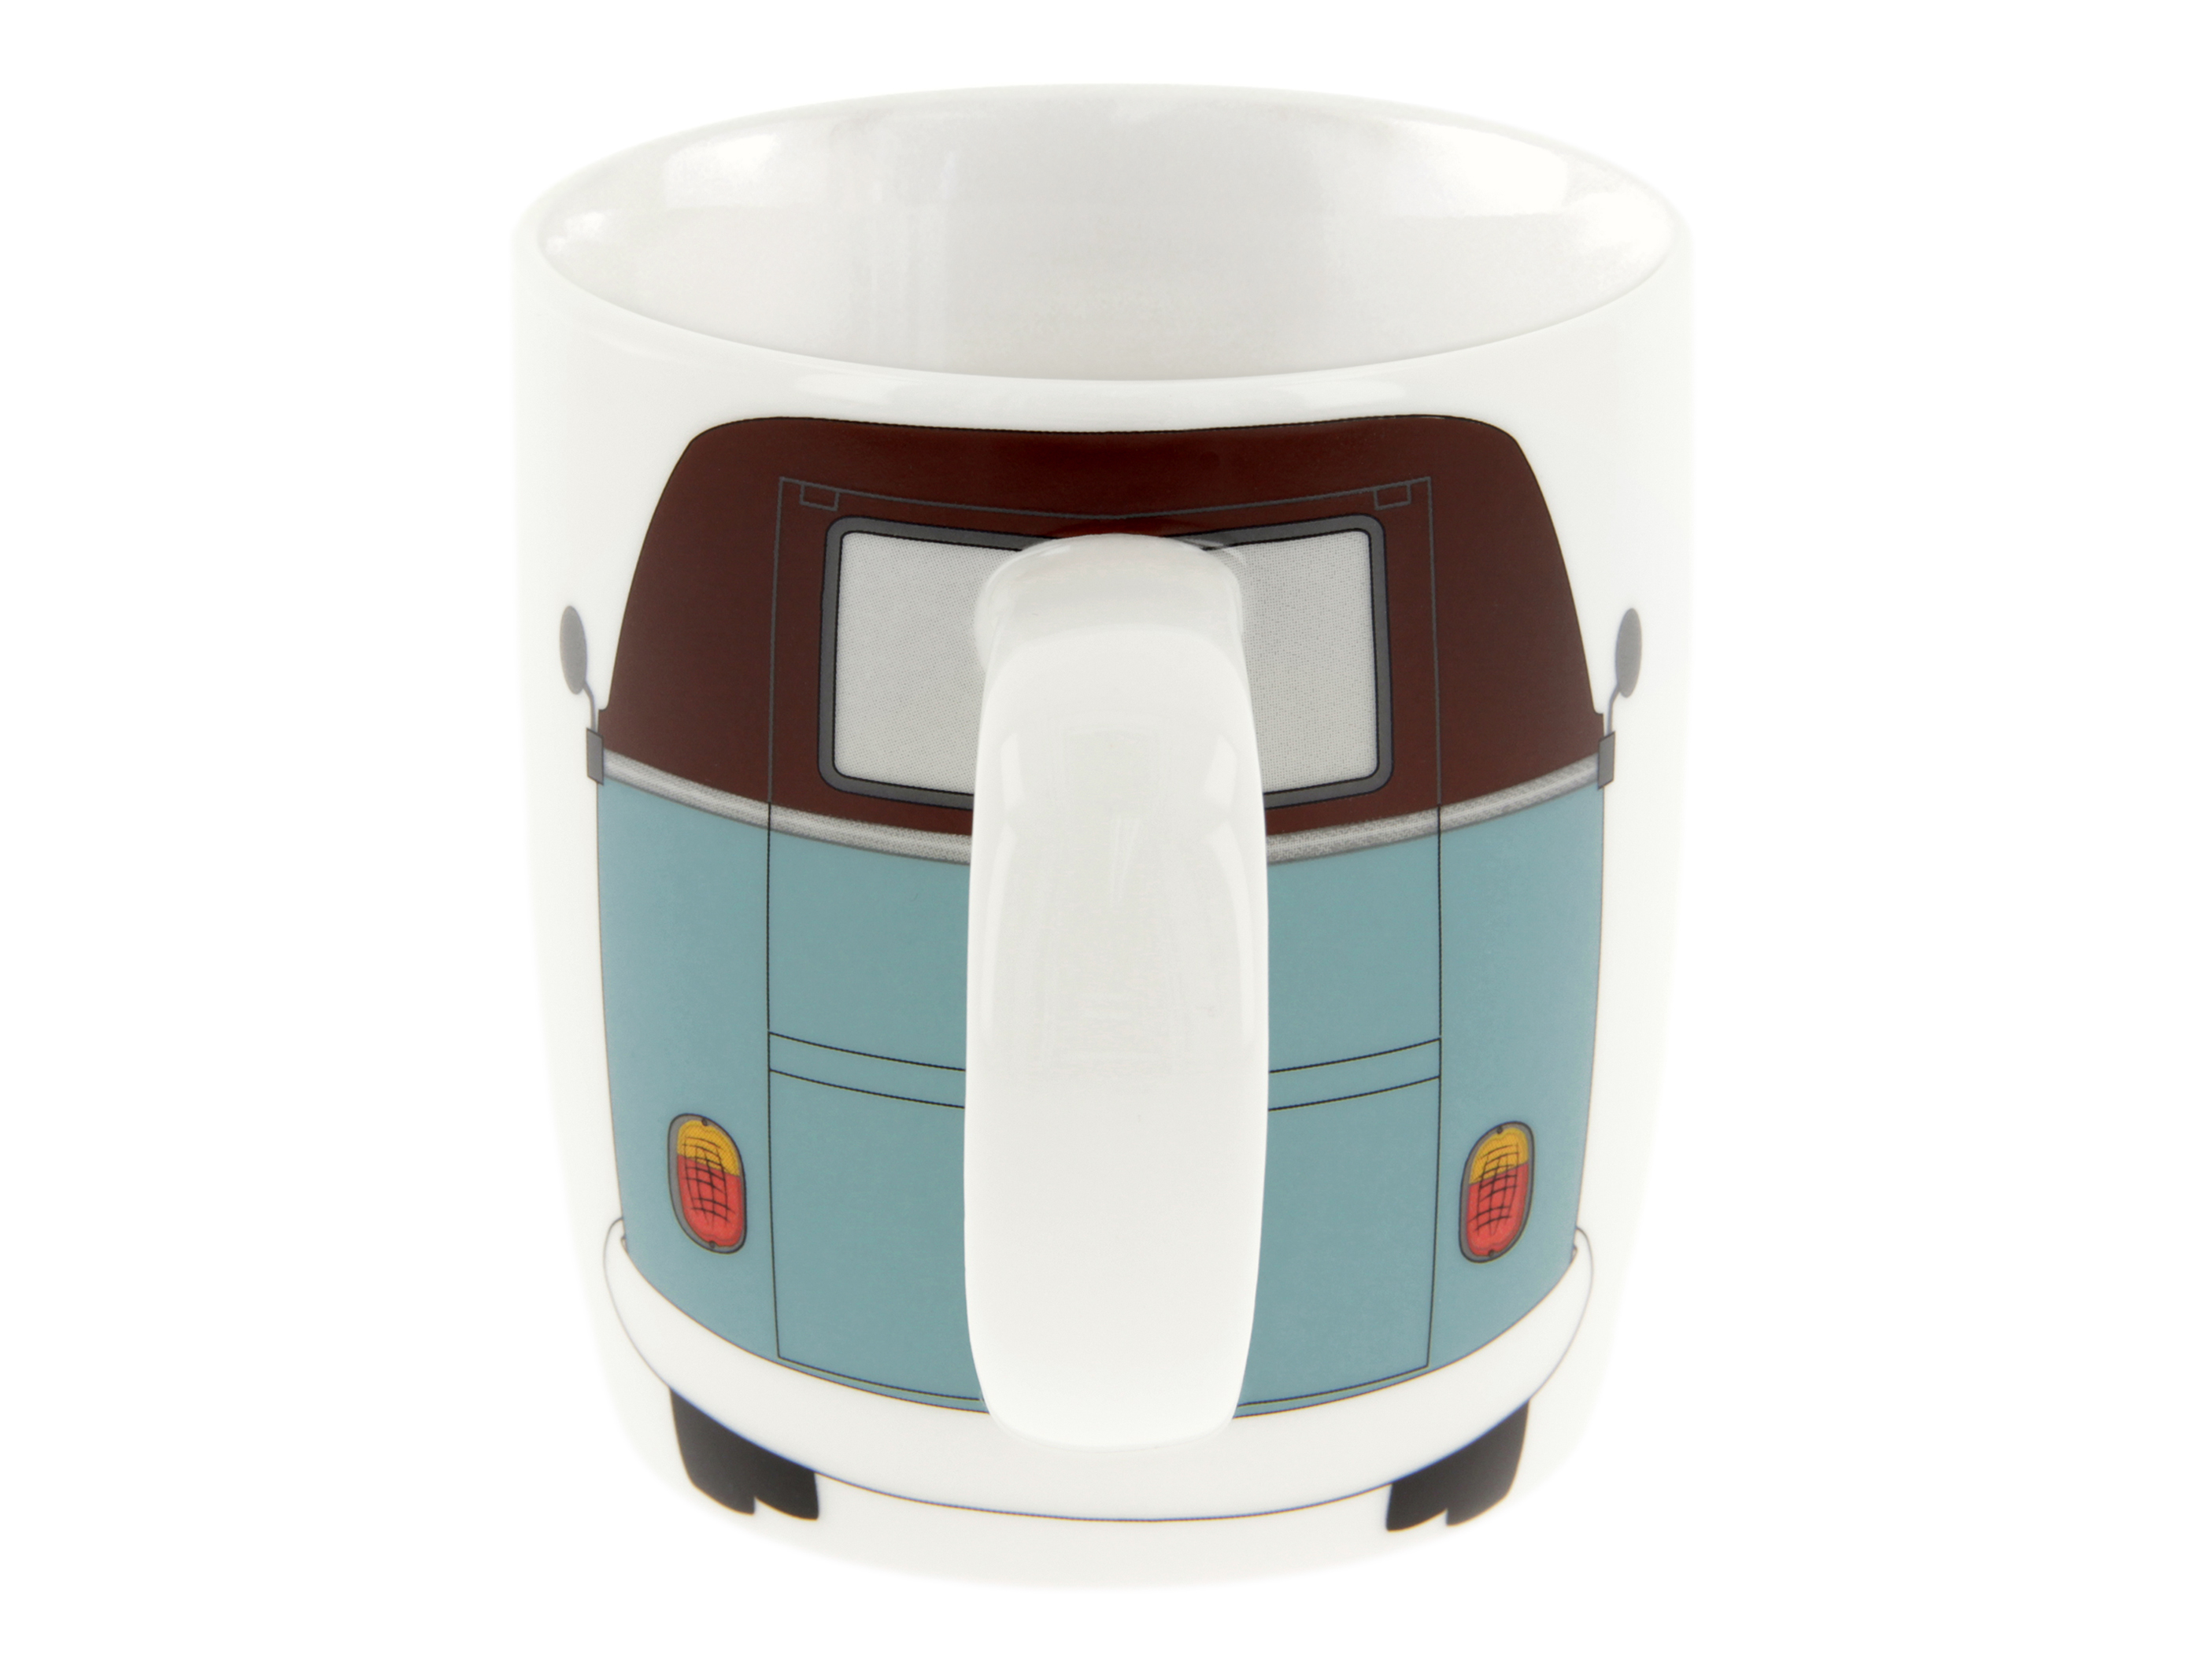 VW T1 Bulli Bus Kaffeetasse 370ml